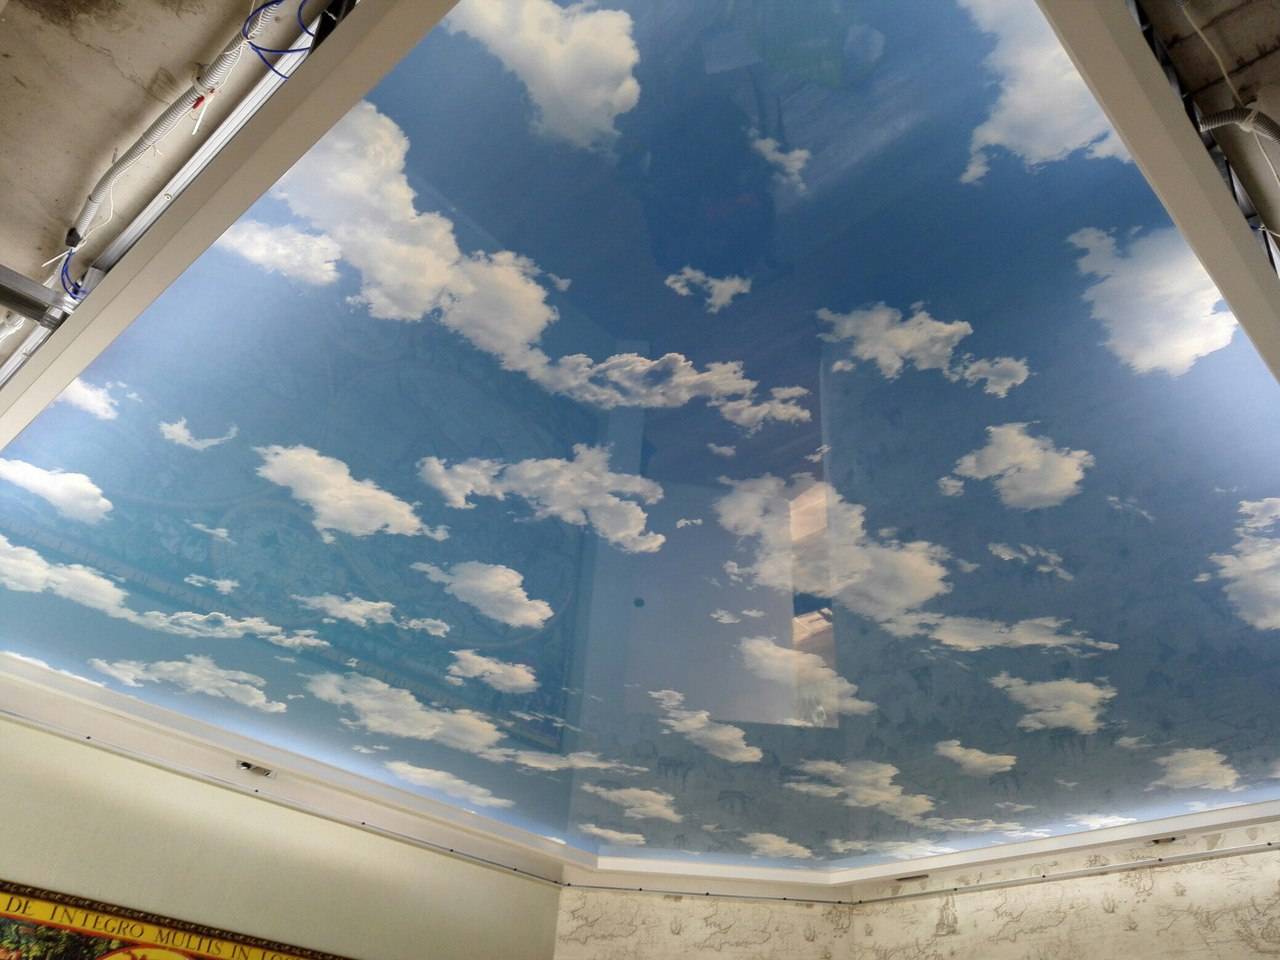 Натяжной потолок облака, фото и видео примеры: изучаем детально